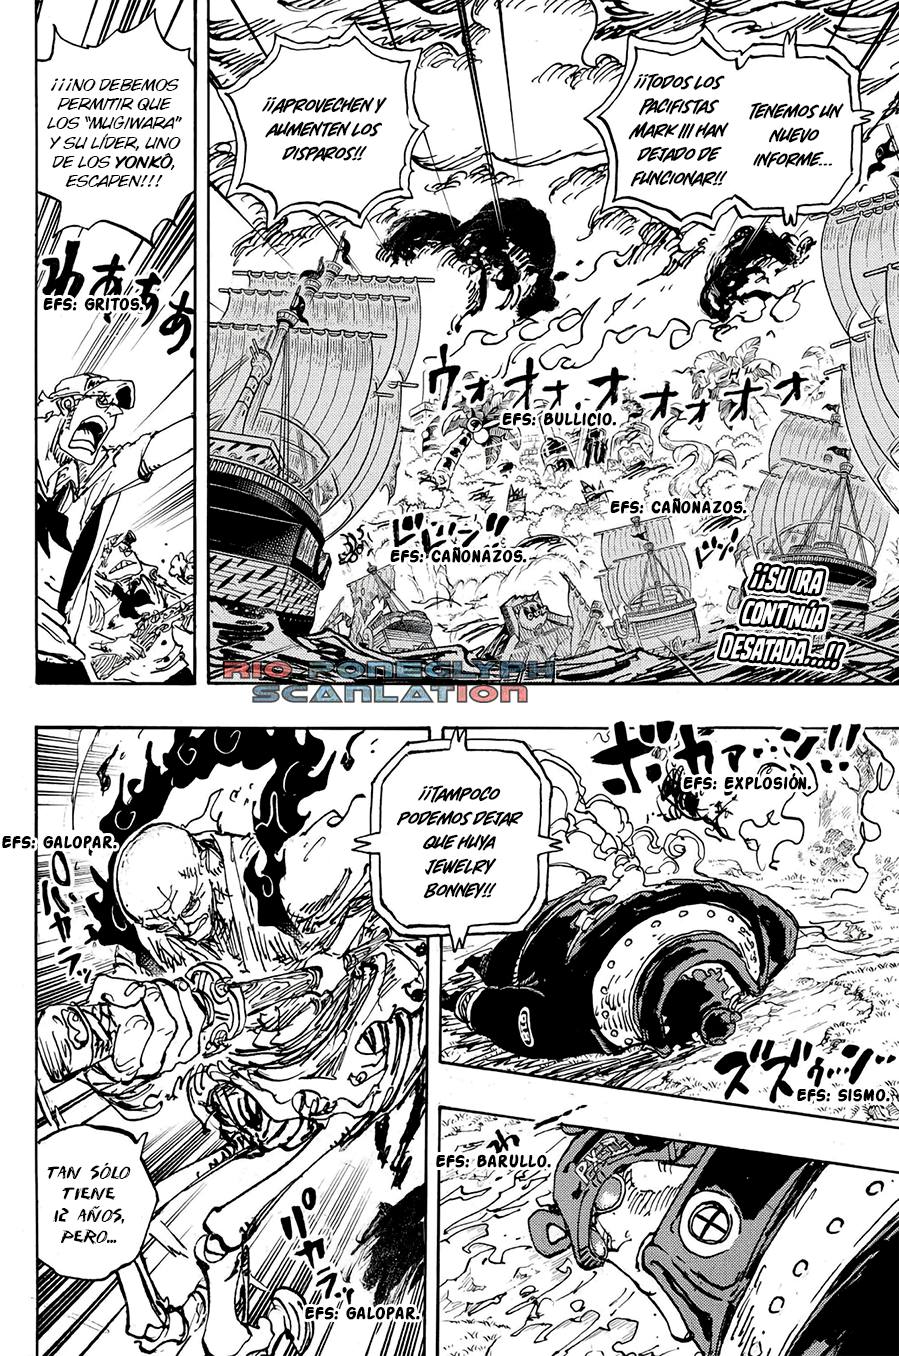 español - One Piece Manga 1112 [Español] [Rio Poneglyph Scans] 01-2